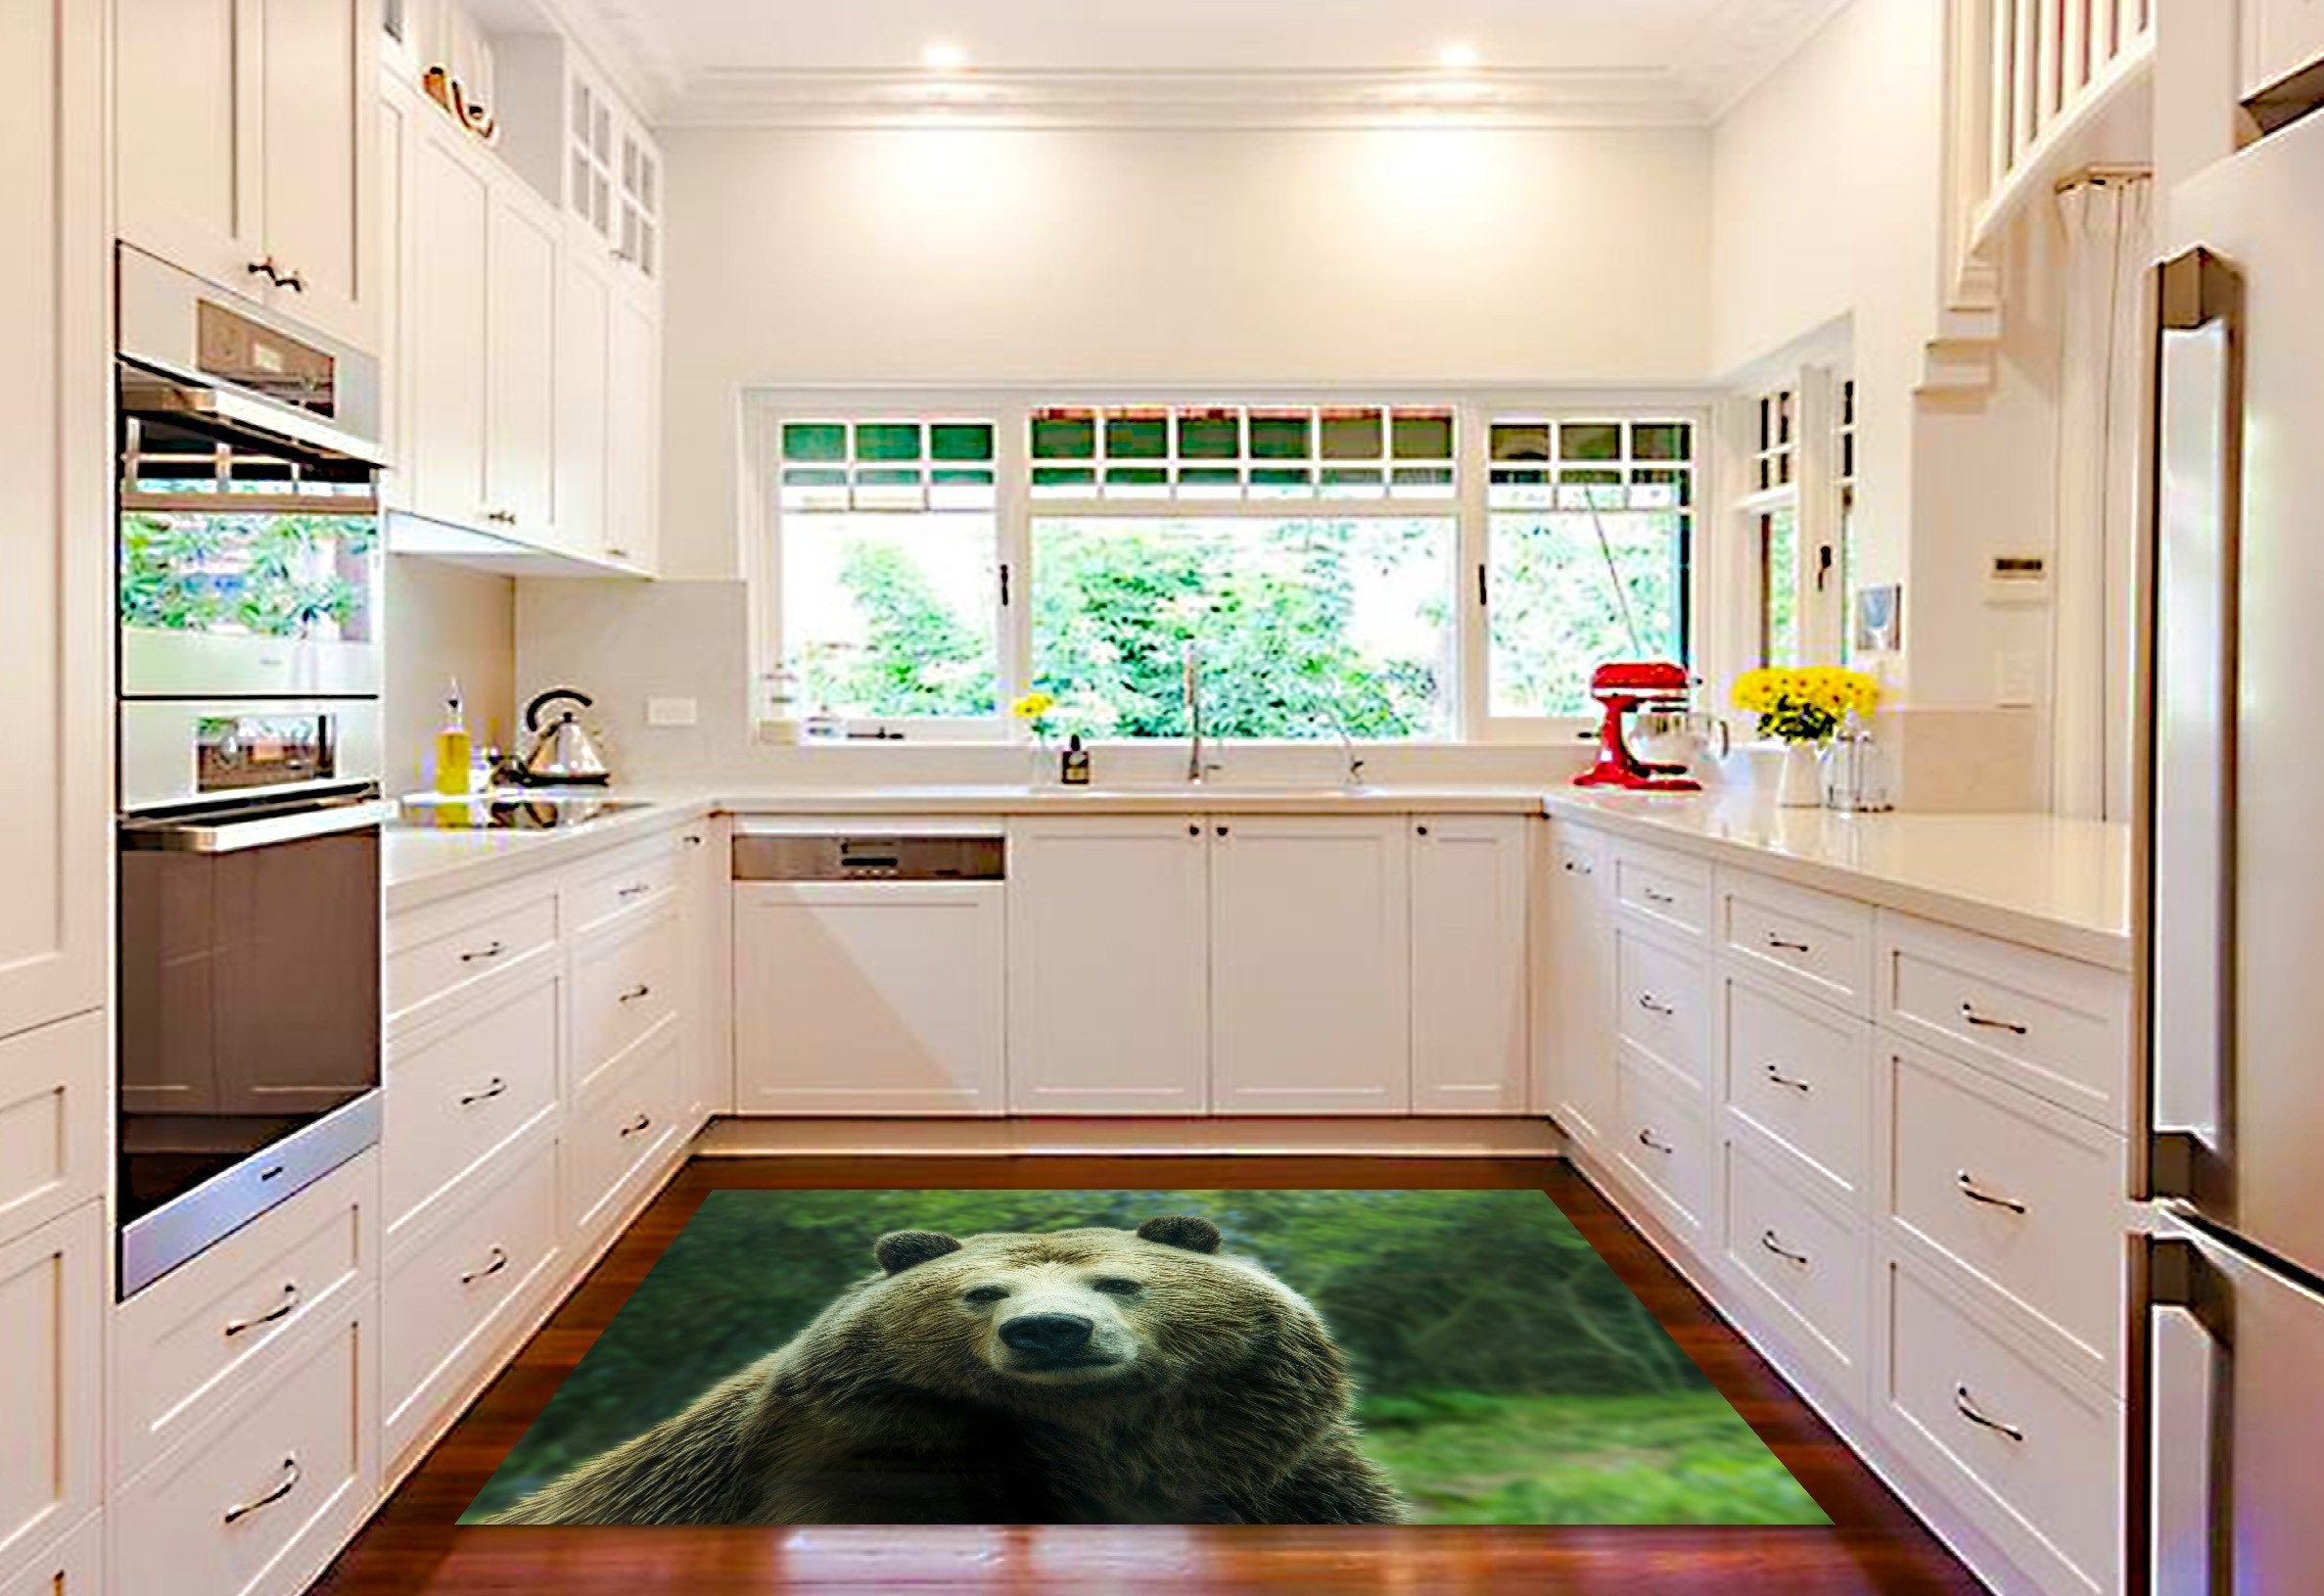 3D Innocent Bear 616 Kitchen Mat Floor Mural Wallpaper AJ Wallpaper 